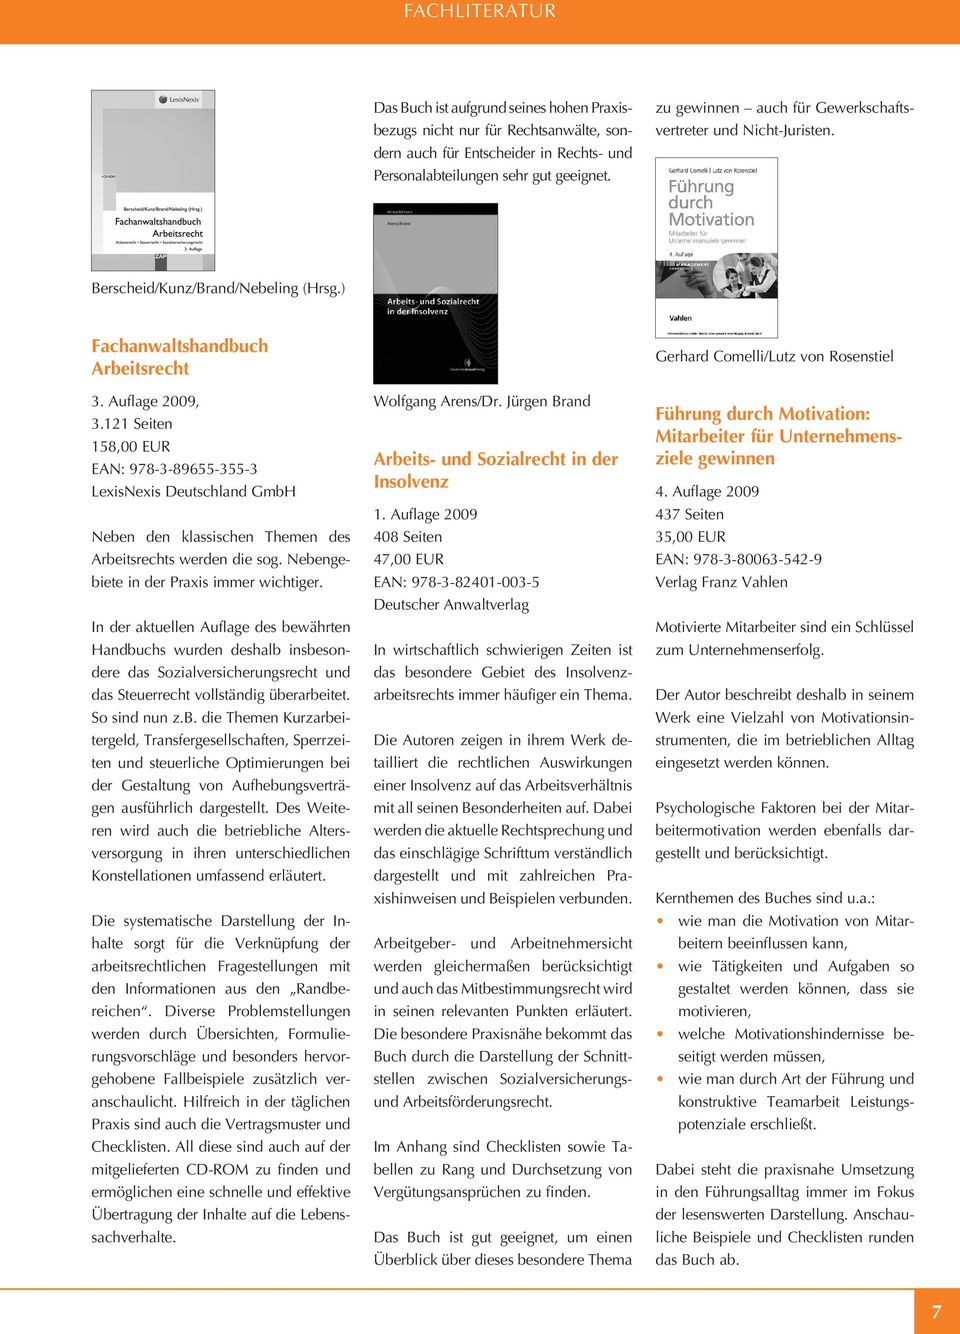 121 Seiten 158,00 EUR EAN: 978-3-89655-355-3 LexisNexis Deutschland GmbH Neben den klassischen Themen des Arbeitsrechts werden die sog. Nebengebiete in der Praxis immer wichtiger.